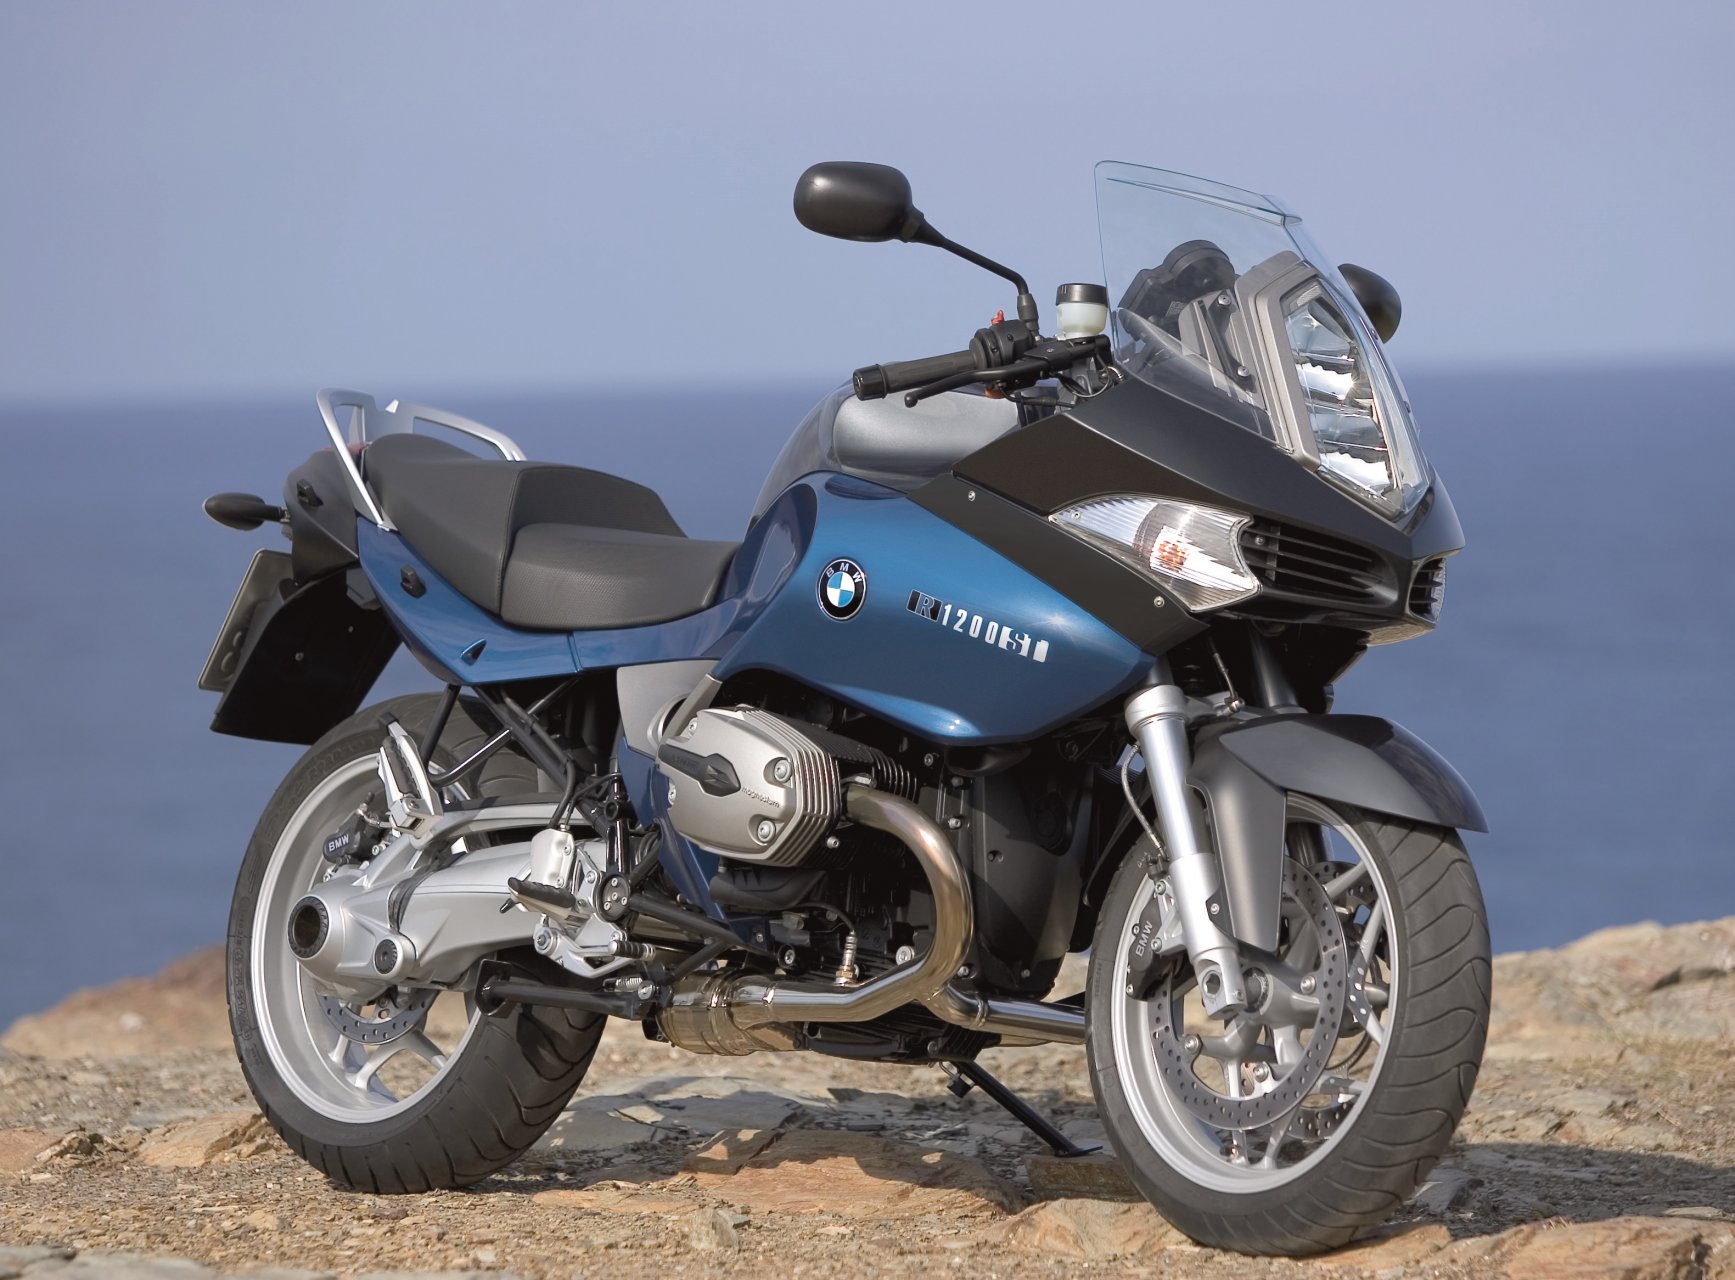 Acostado Decrépito entusiasmo Moto del día: BMW R 1200 ST - espíritu RACER moto